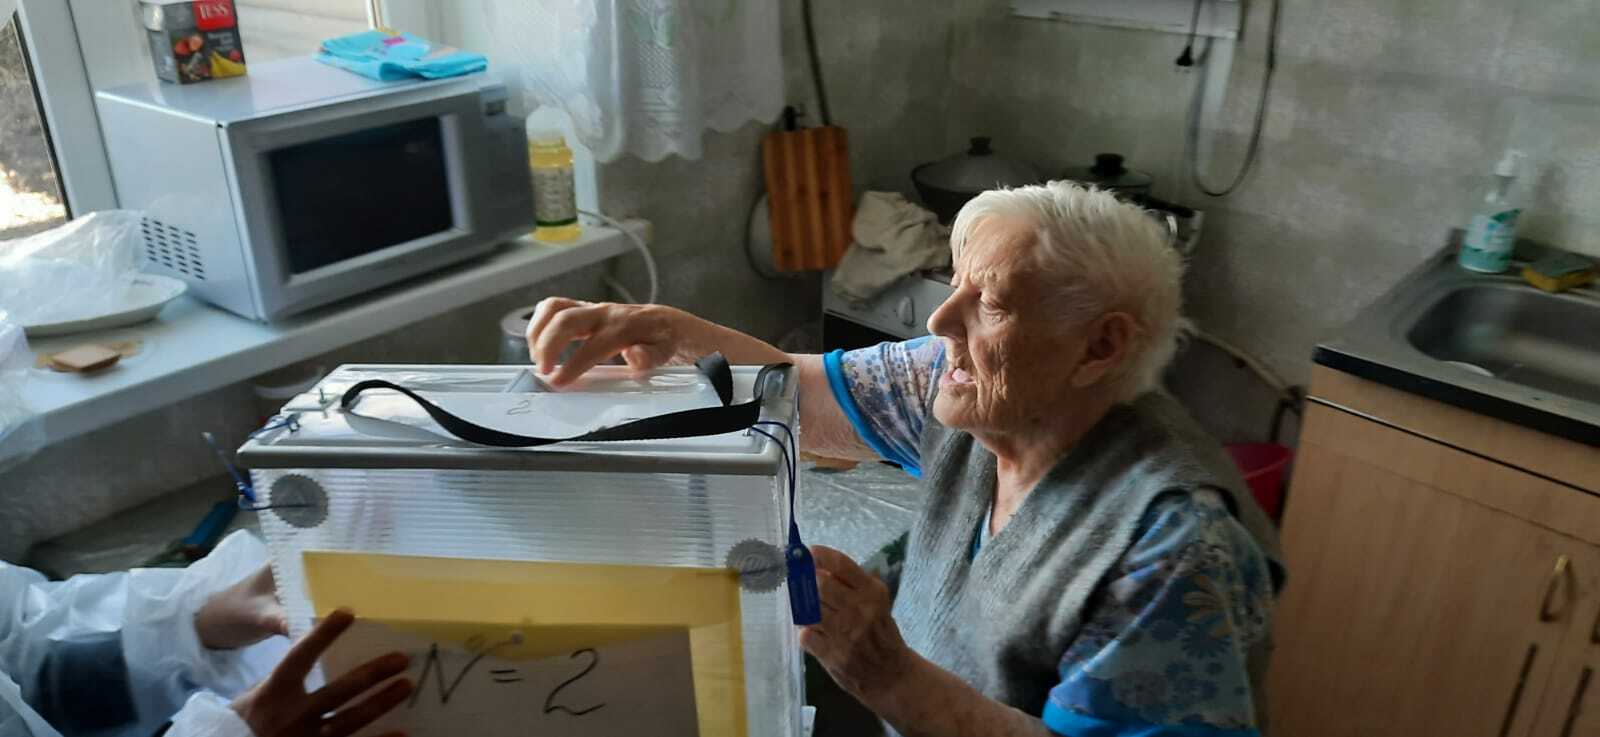 Ветераны труда,  старейшие жители  села Красная Башкирия  Абзелиловского района  Башкортостана  голосуют на дому